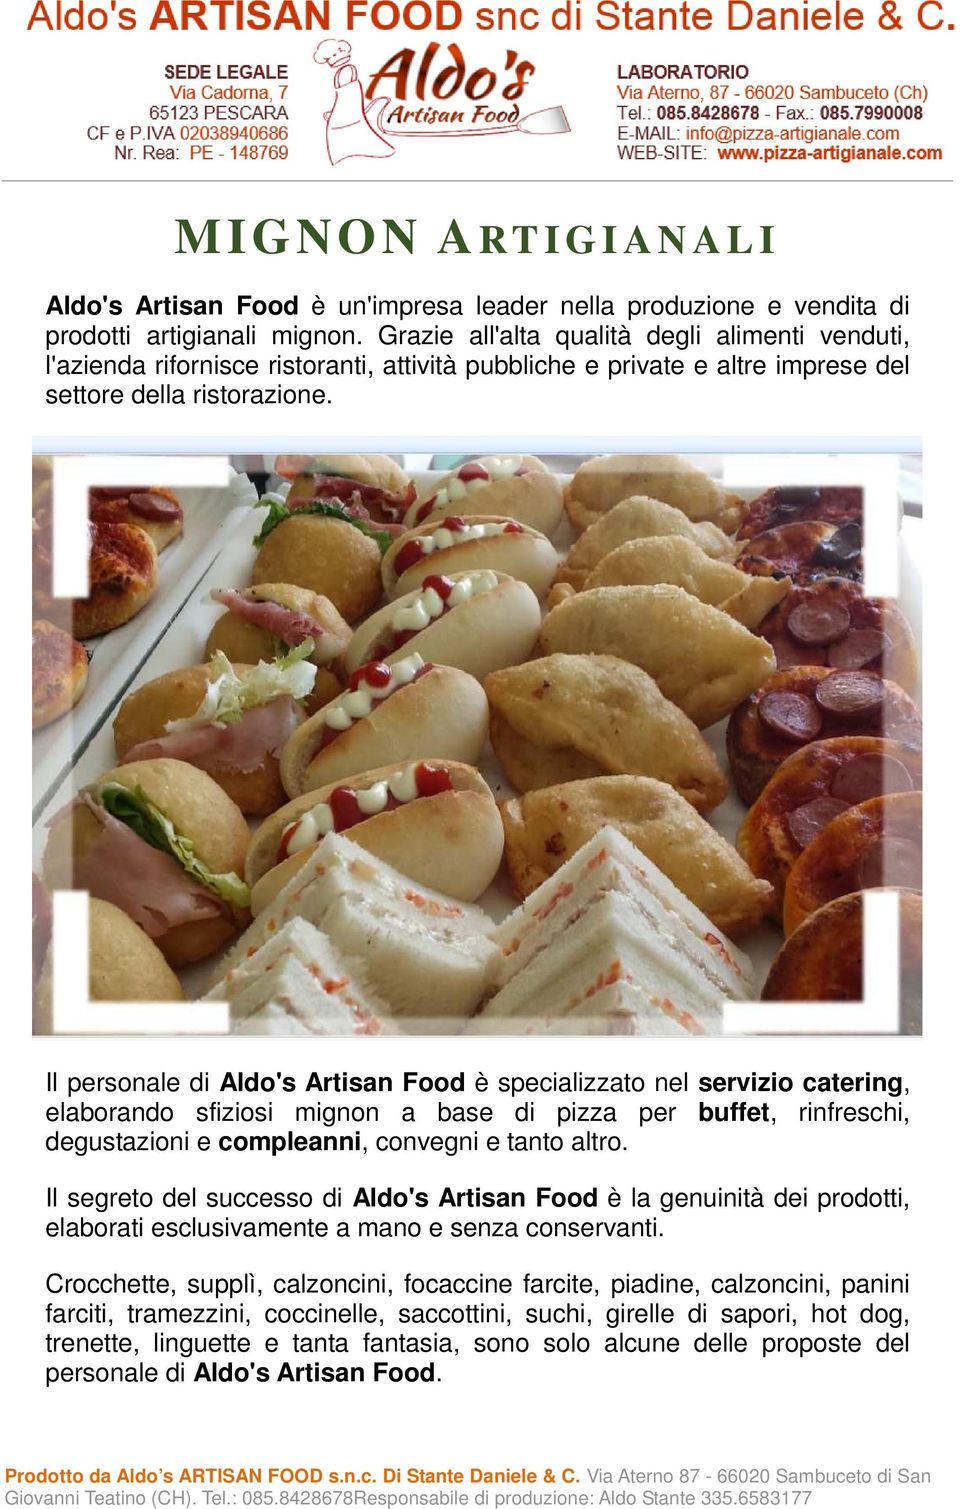 Il personale di Aldo's Artisan Food è specializzato nel servizio catering, elaborando sfiziosi mignon a base di pizza per buffet, rinfreschi, degustazioni e compleanni, convegni e tanto altro.